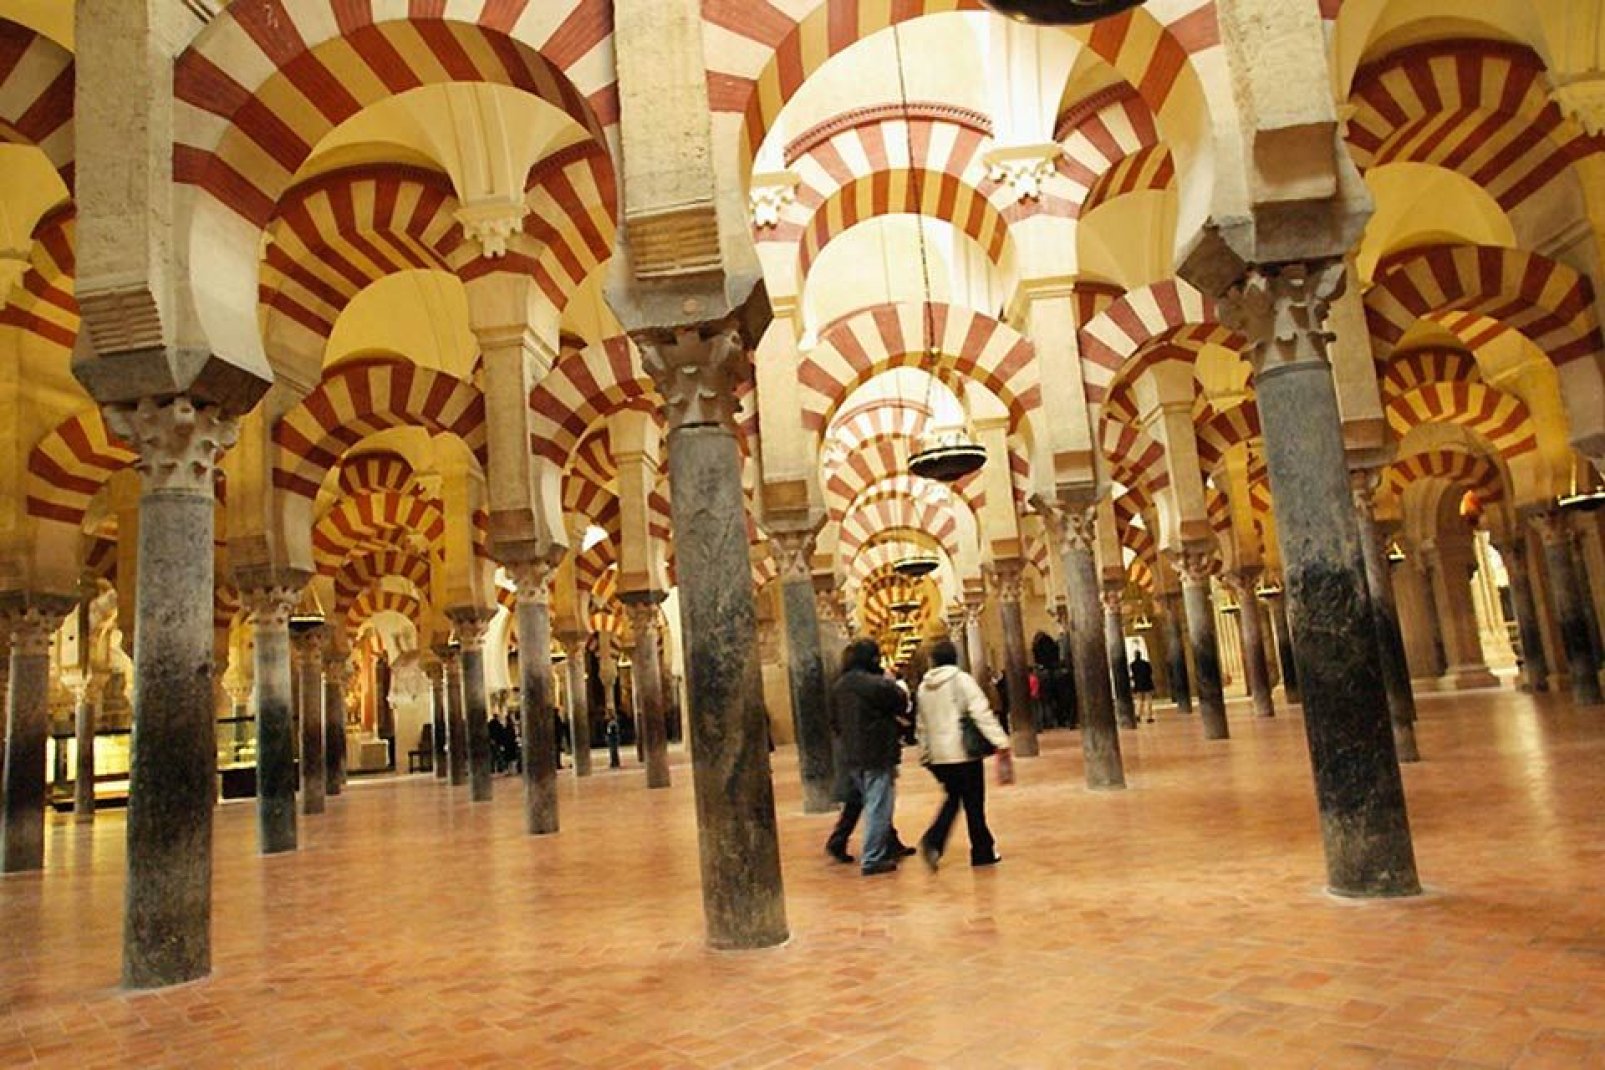 La Moschea, Cattedrale di Cordoba rappresenta il monumento più importante di tutto l'Occidente islamico.